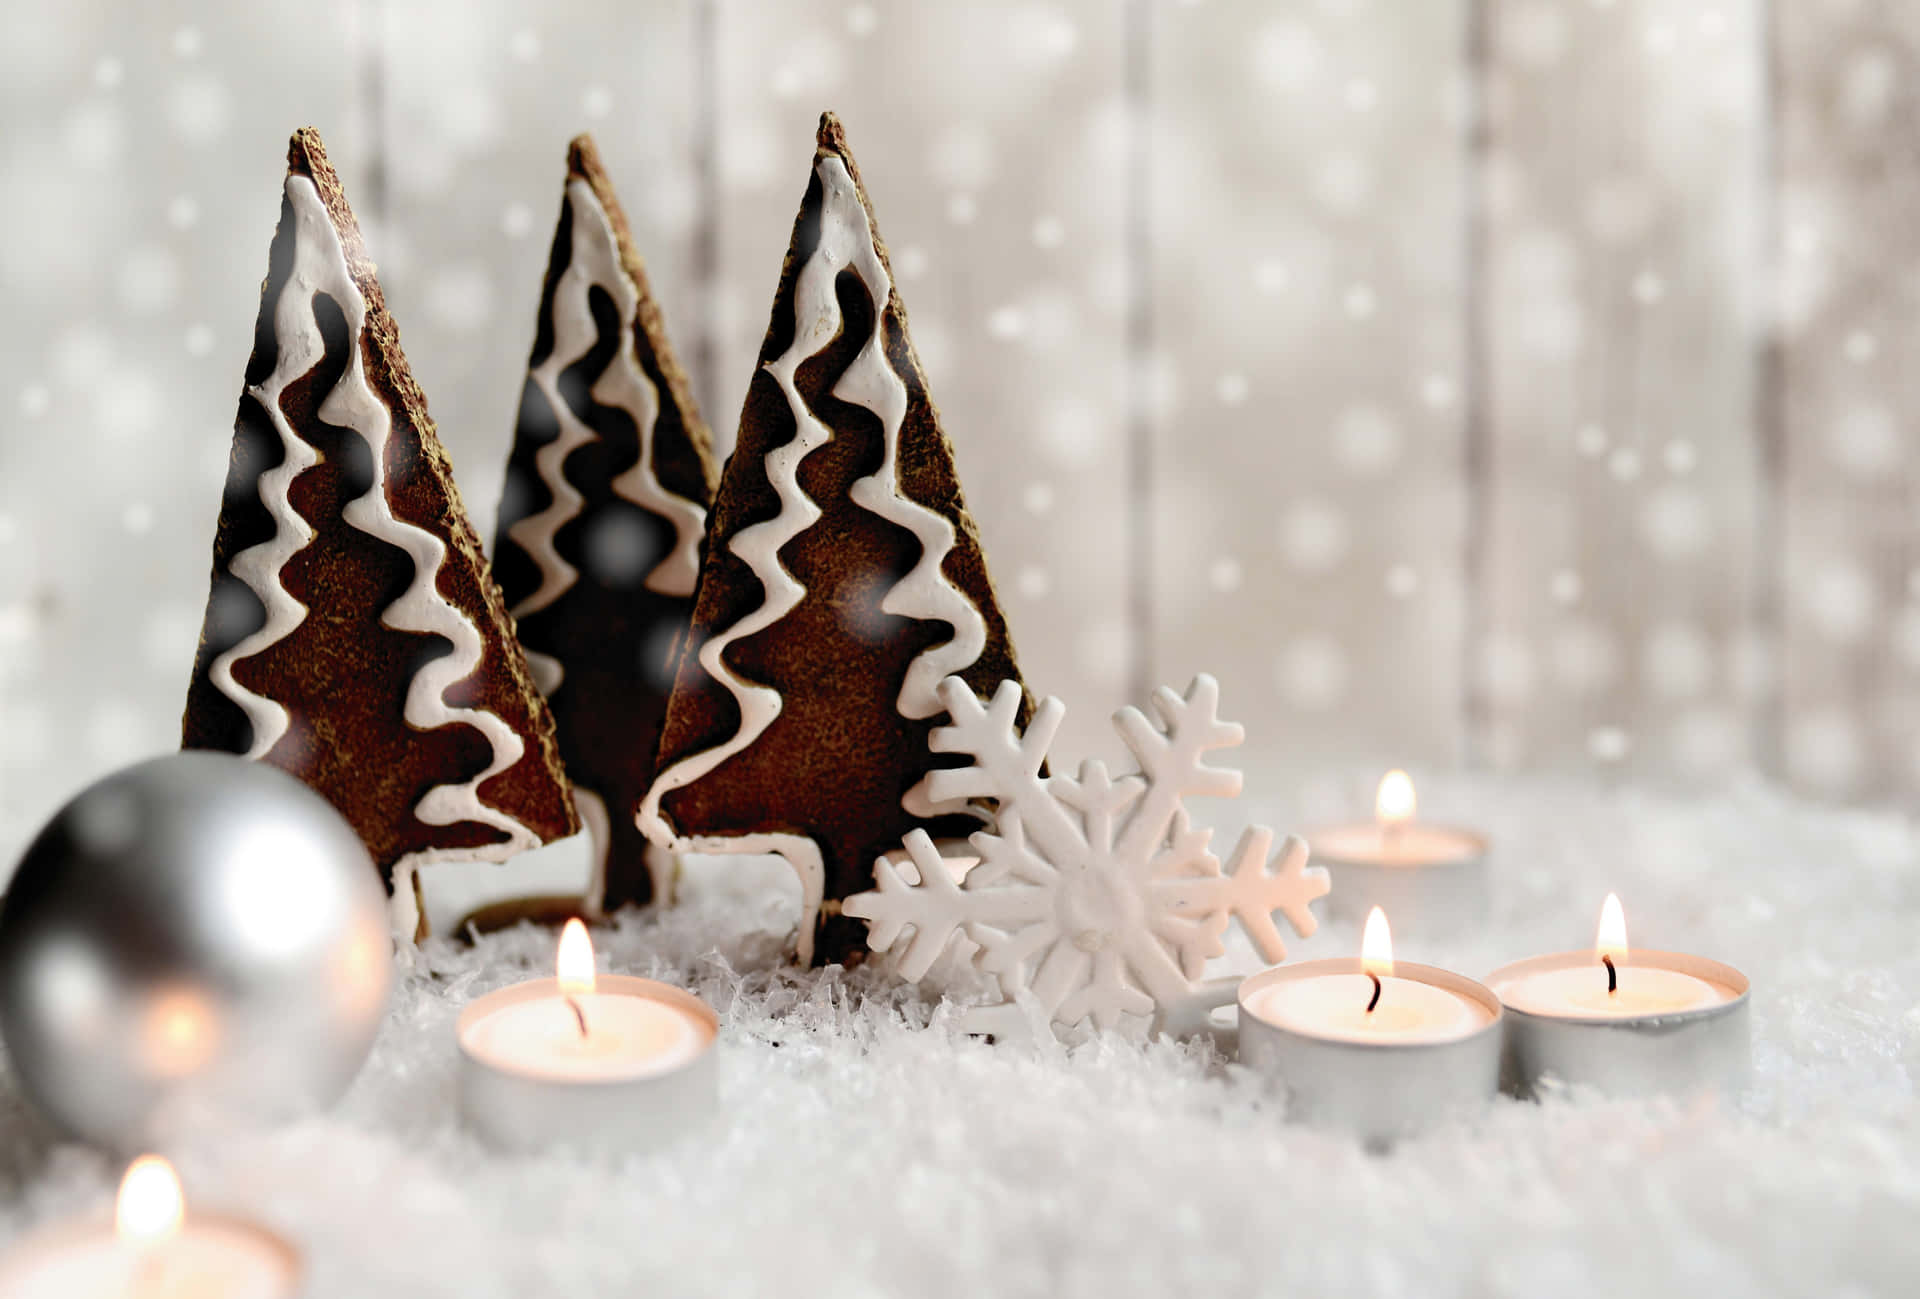 Cookiesand Candles En Alta Resolución Para El Escritorio De Navidad. Fondo de pantalla